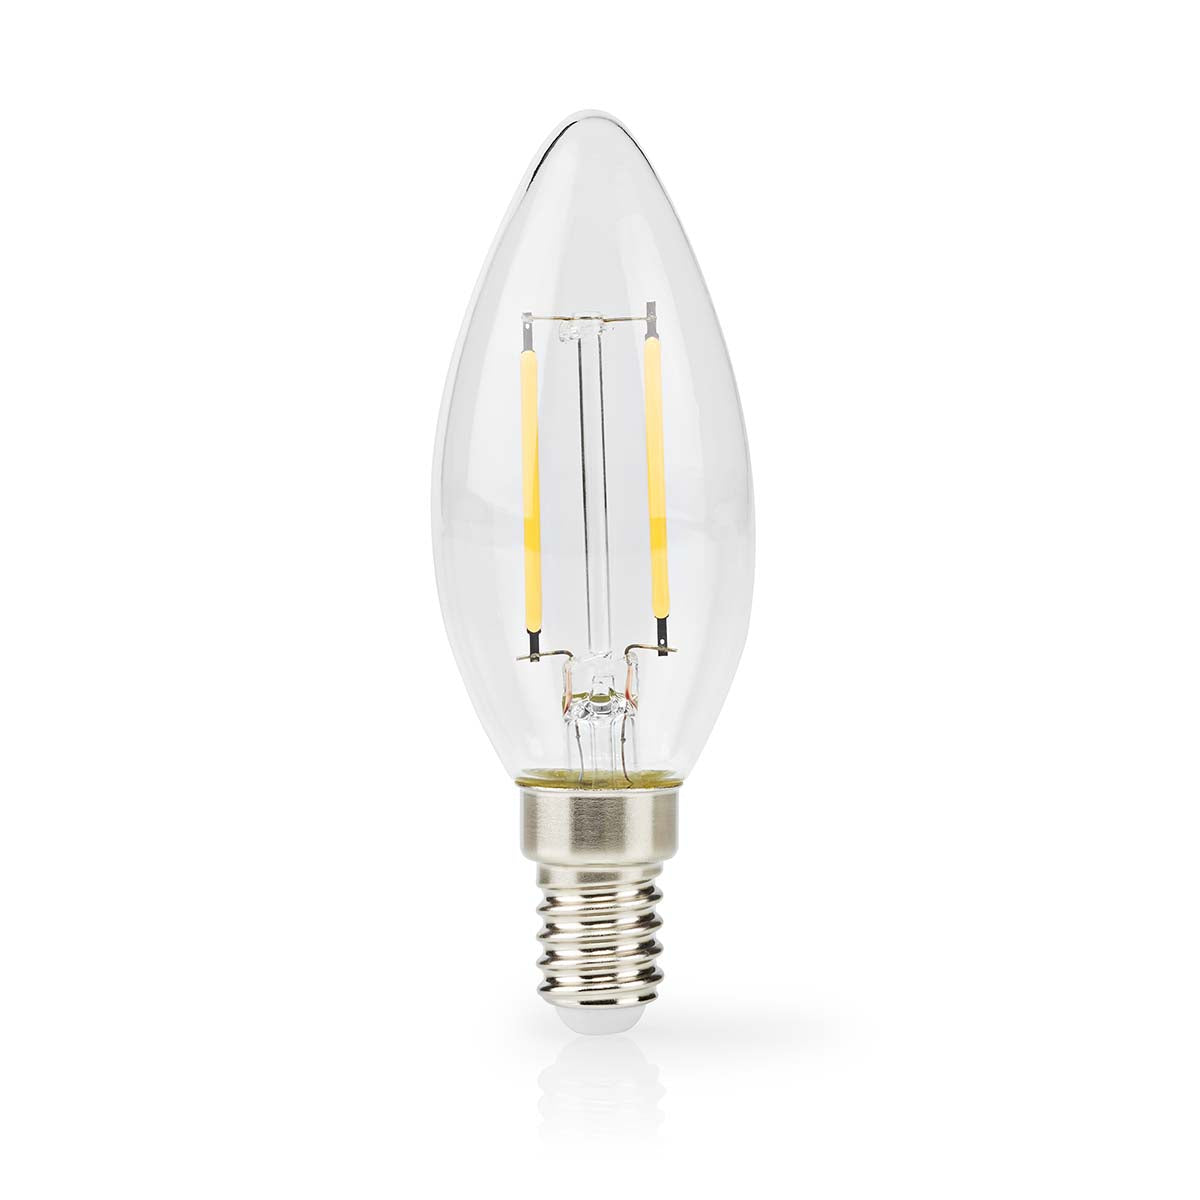 LED-Filament-Lampe E14 | Kerze | 2 W | 250 lm | 2700 K | Warmweiss | Retro Style | 1 Stück | Klar